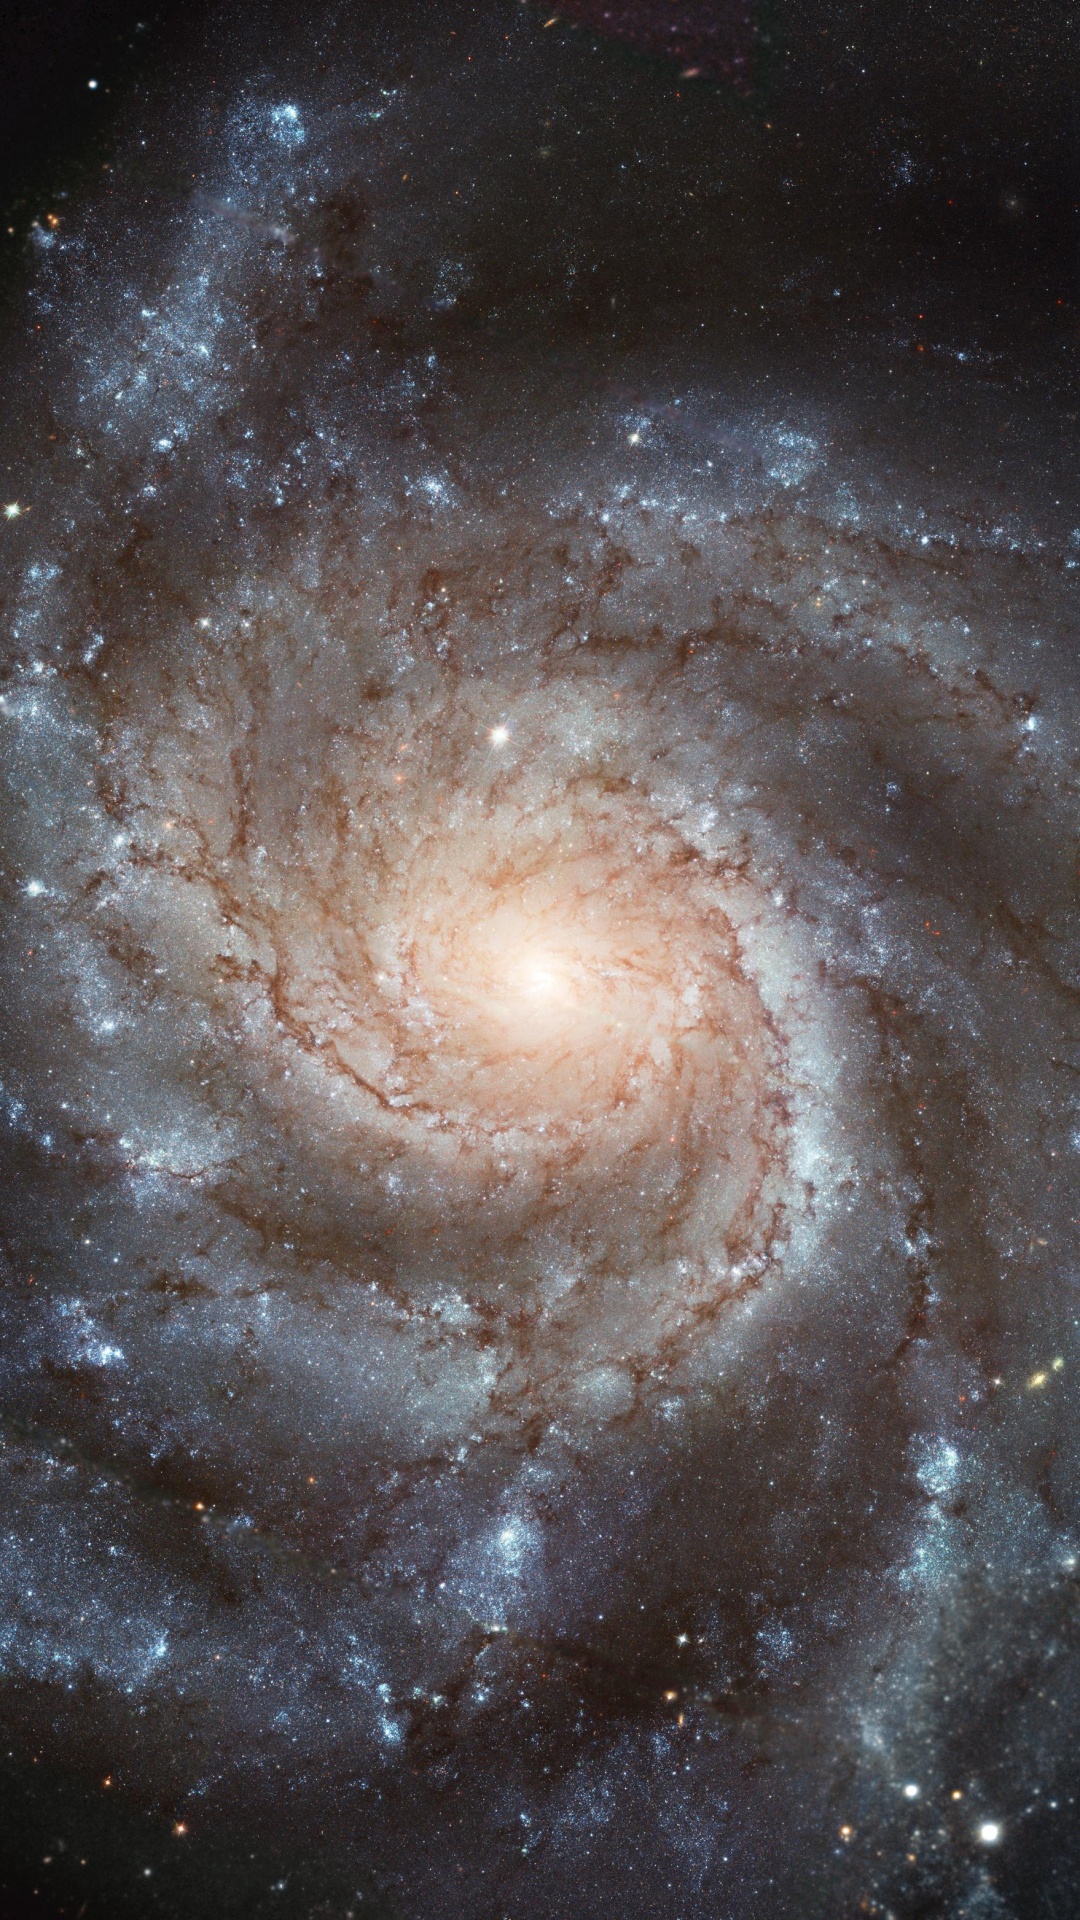 螺旋星系, 哈勃太空望远镜, 天文学, 天文学对象, 宇宙 壁纸 1080x1920 允许